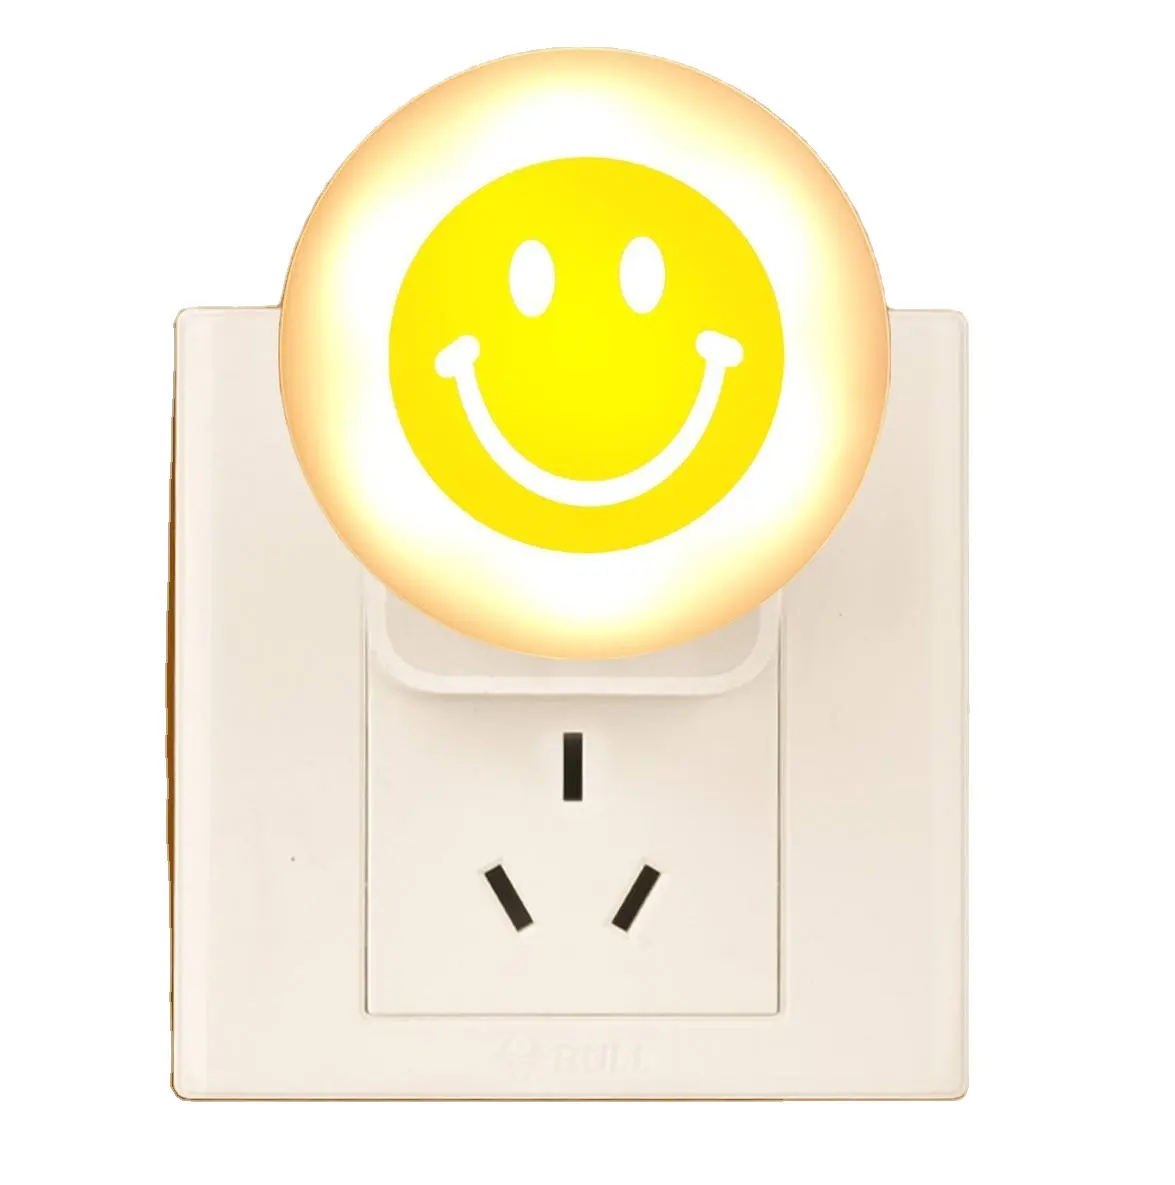 Tragbare USB-Beleuchtung Lampe Nachttisch Kinderzimmer Tisch lampe Computer 5V Power kleine niedliche Lächeln Gesicht Projektion Schlafzimmer Nachtlicht